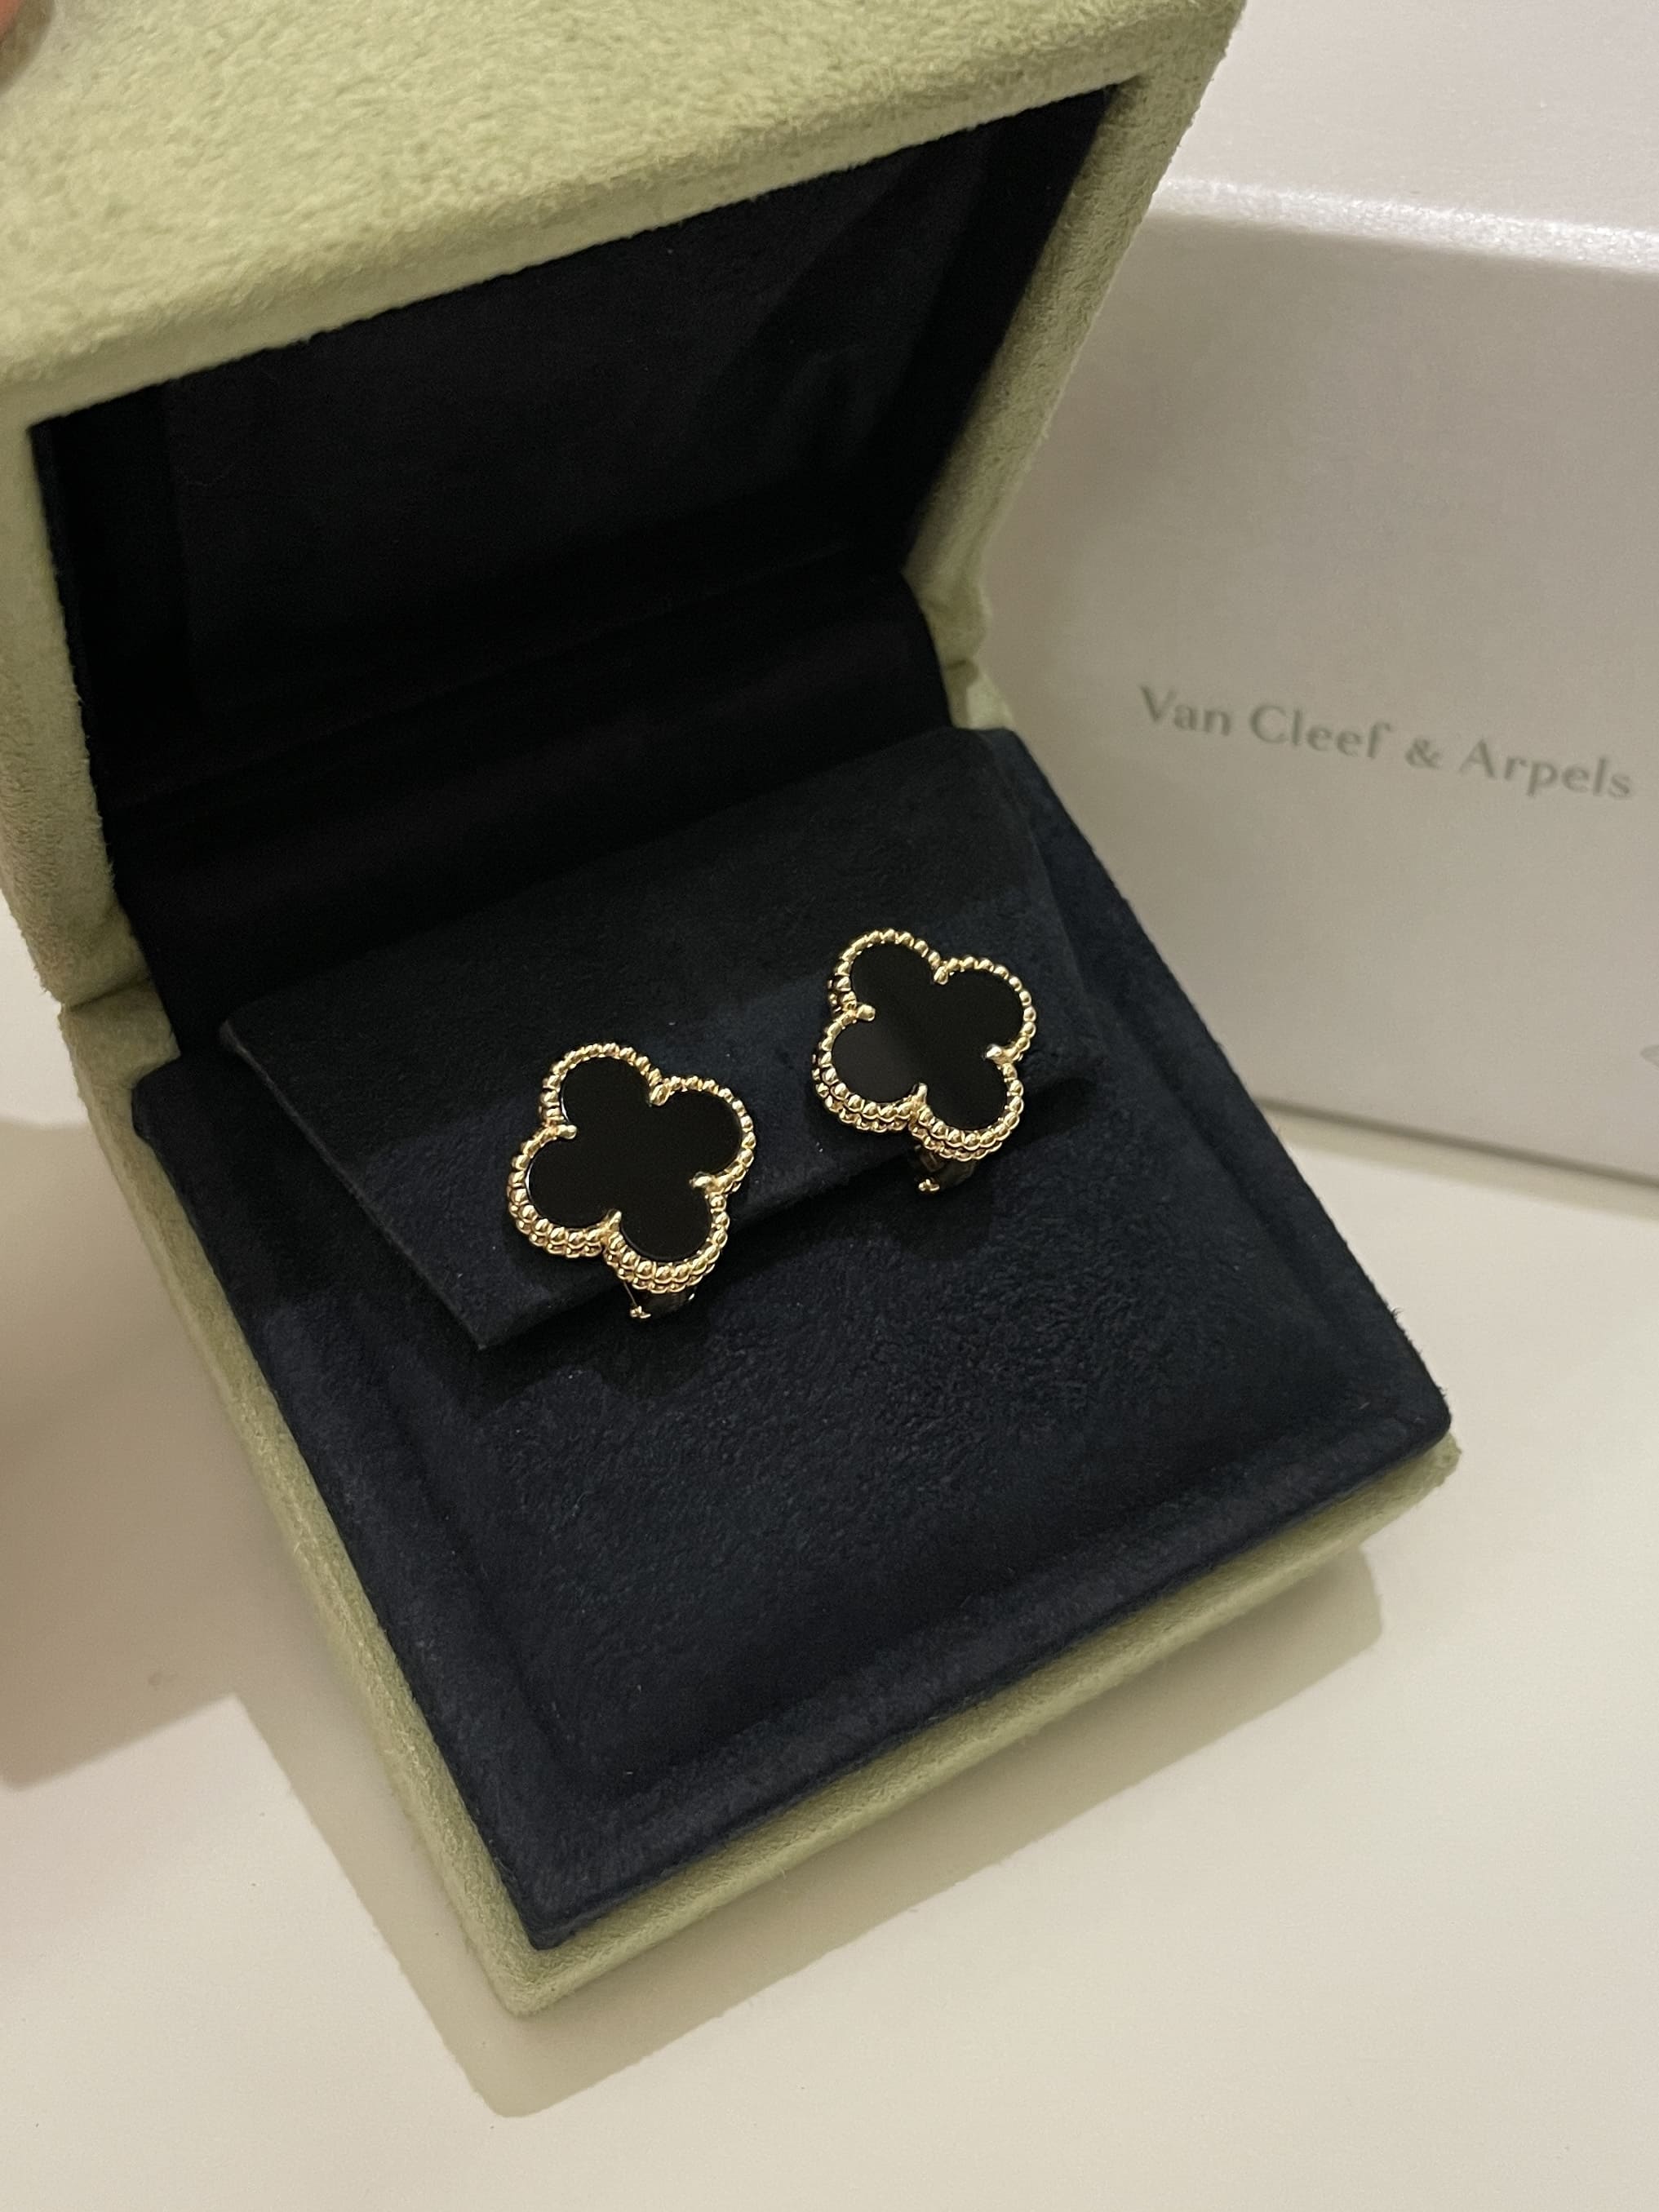 Van Cleef & Arpels Vintage Alhambra Earrings Black Onyx